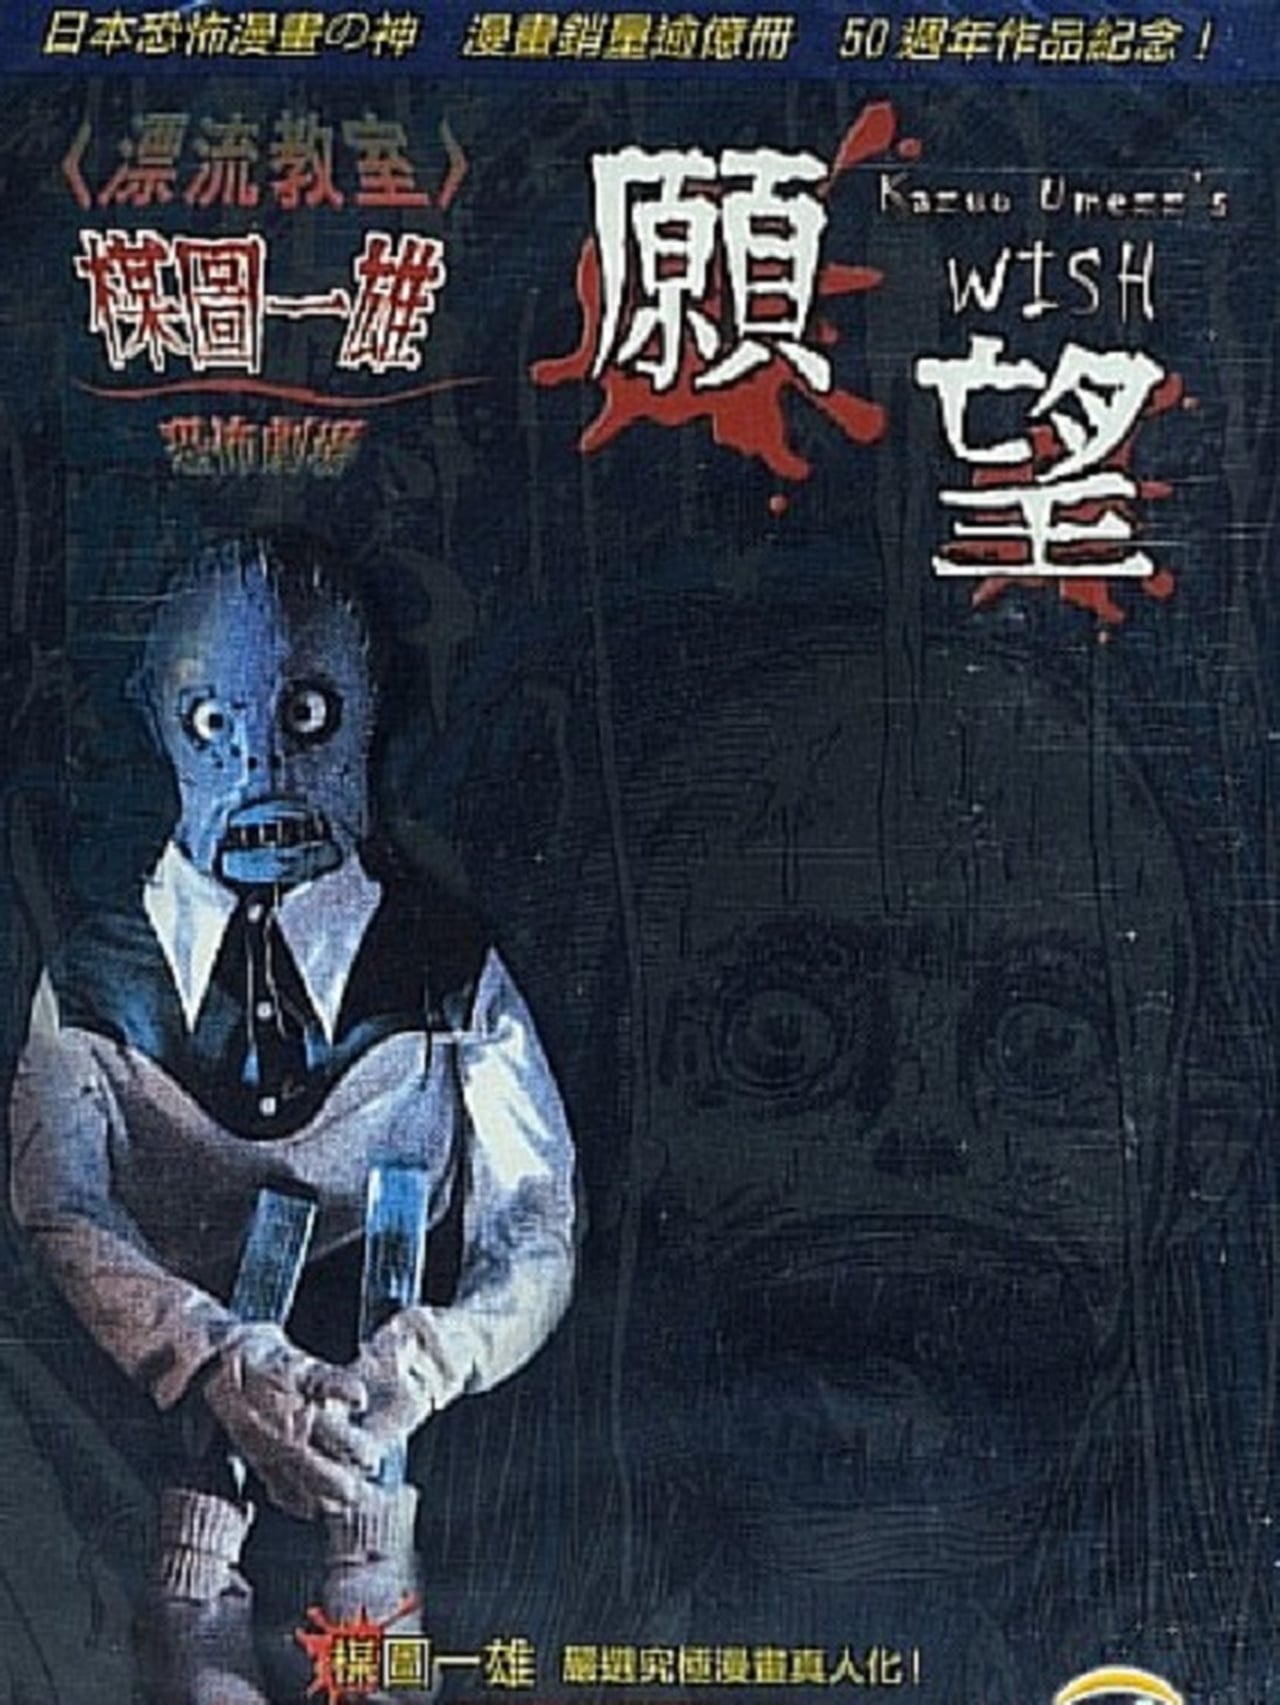 Kazuo Umezu's Horror Theater: The Wish